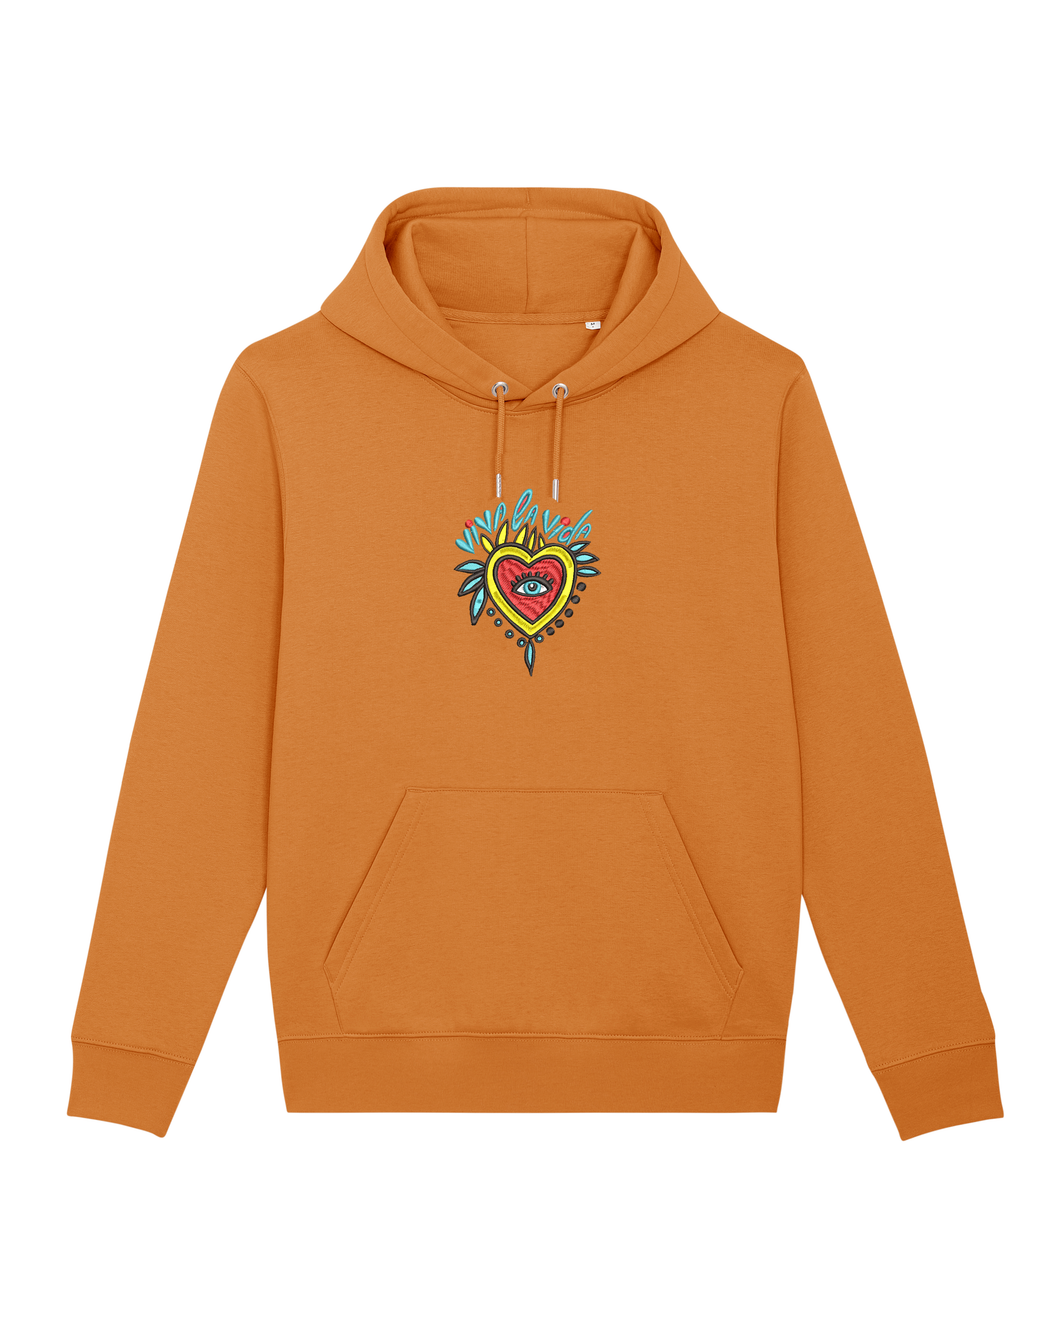 VIVA LA VIDA - Embroidered UNISEX hoodie